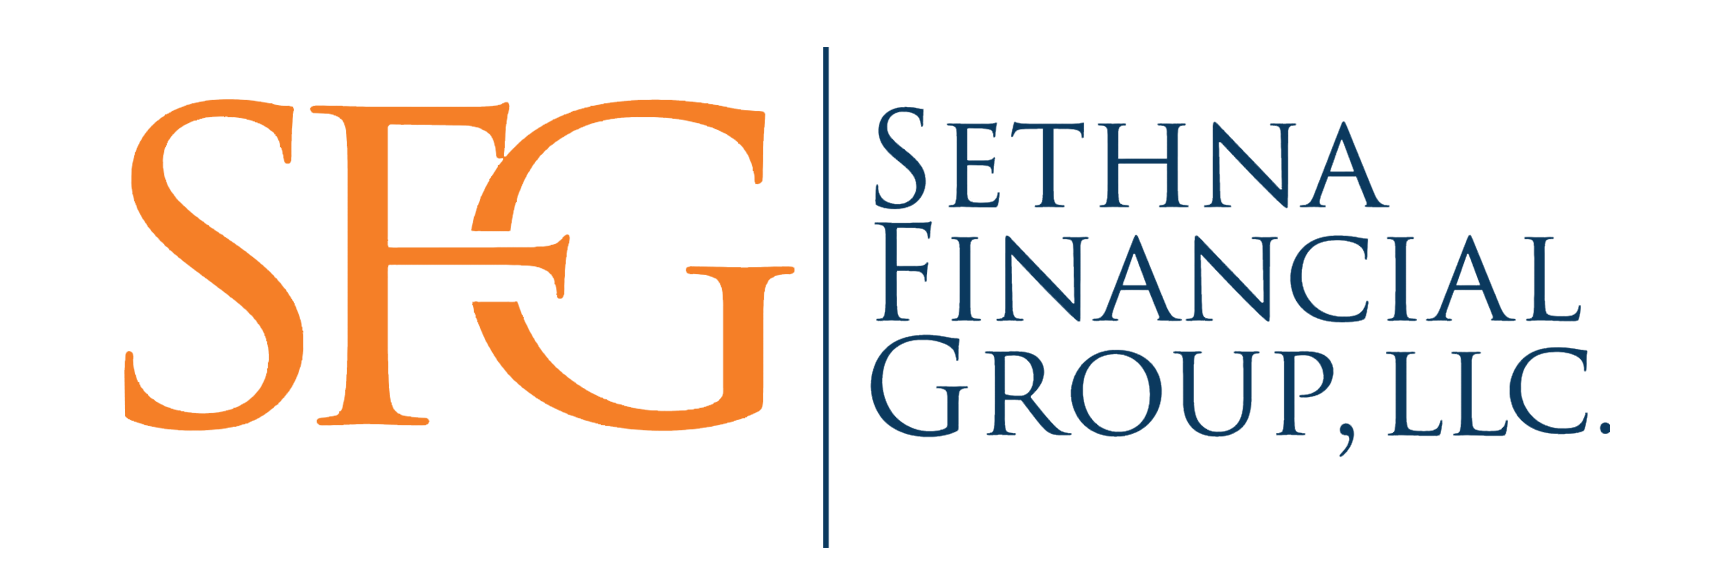 Large Sized Sethna Financial Group Logo